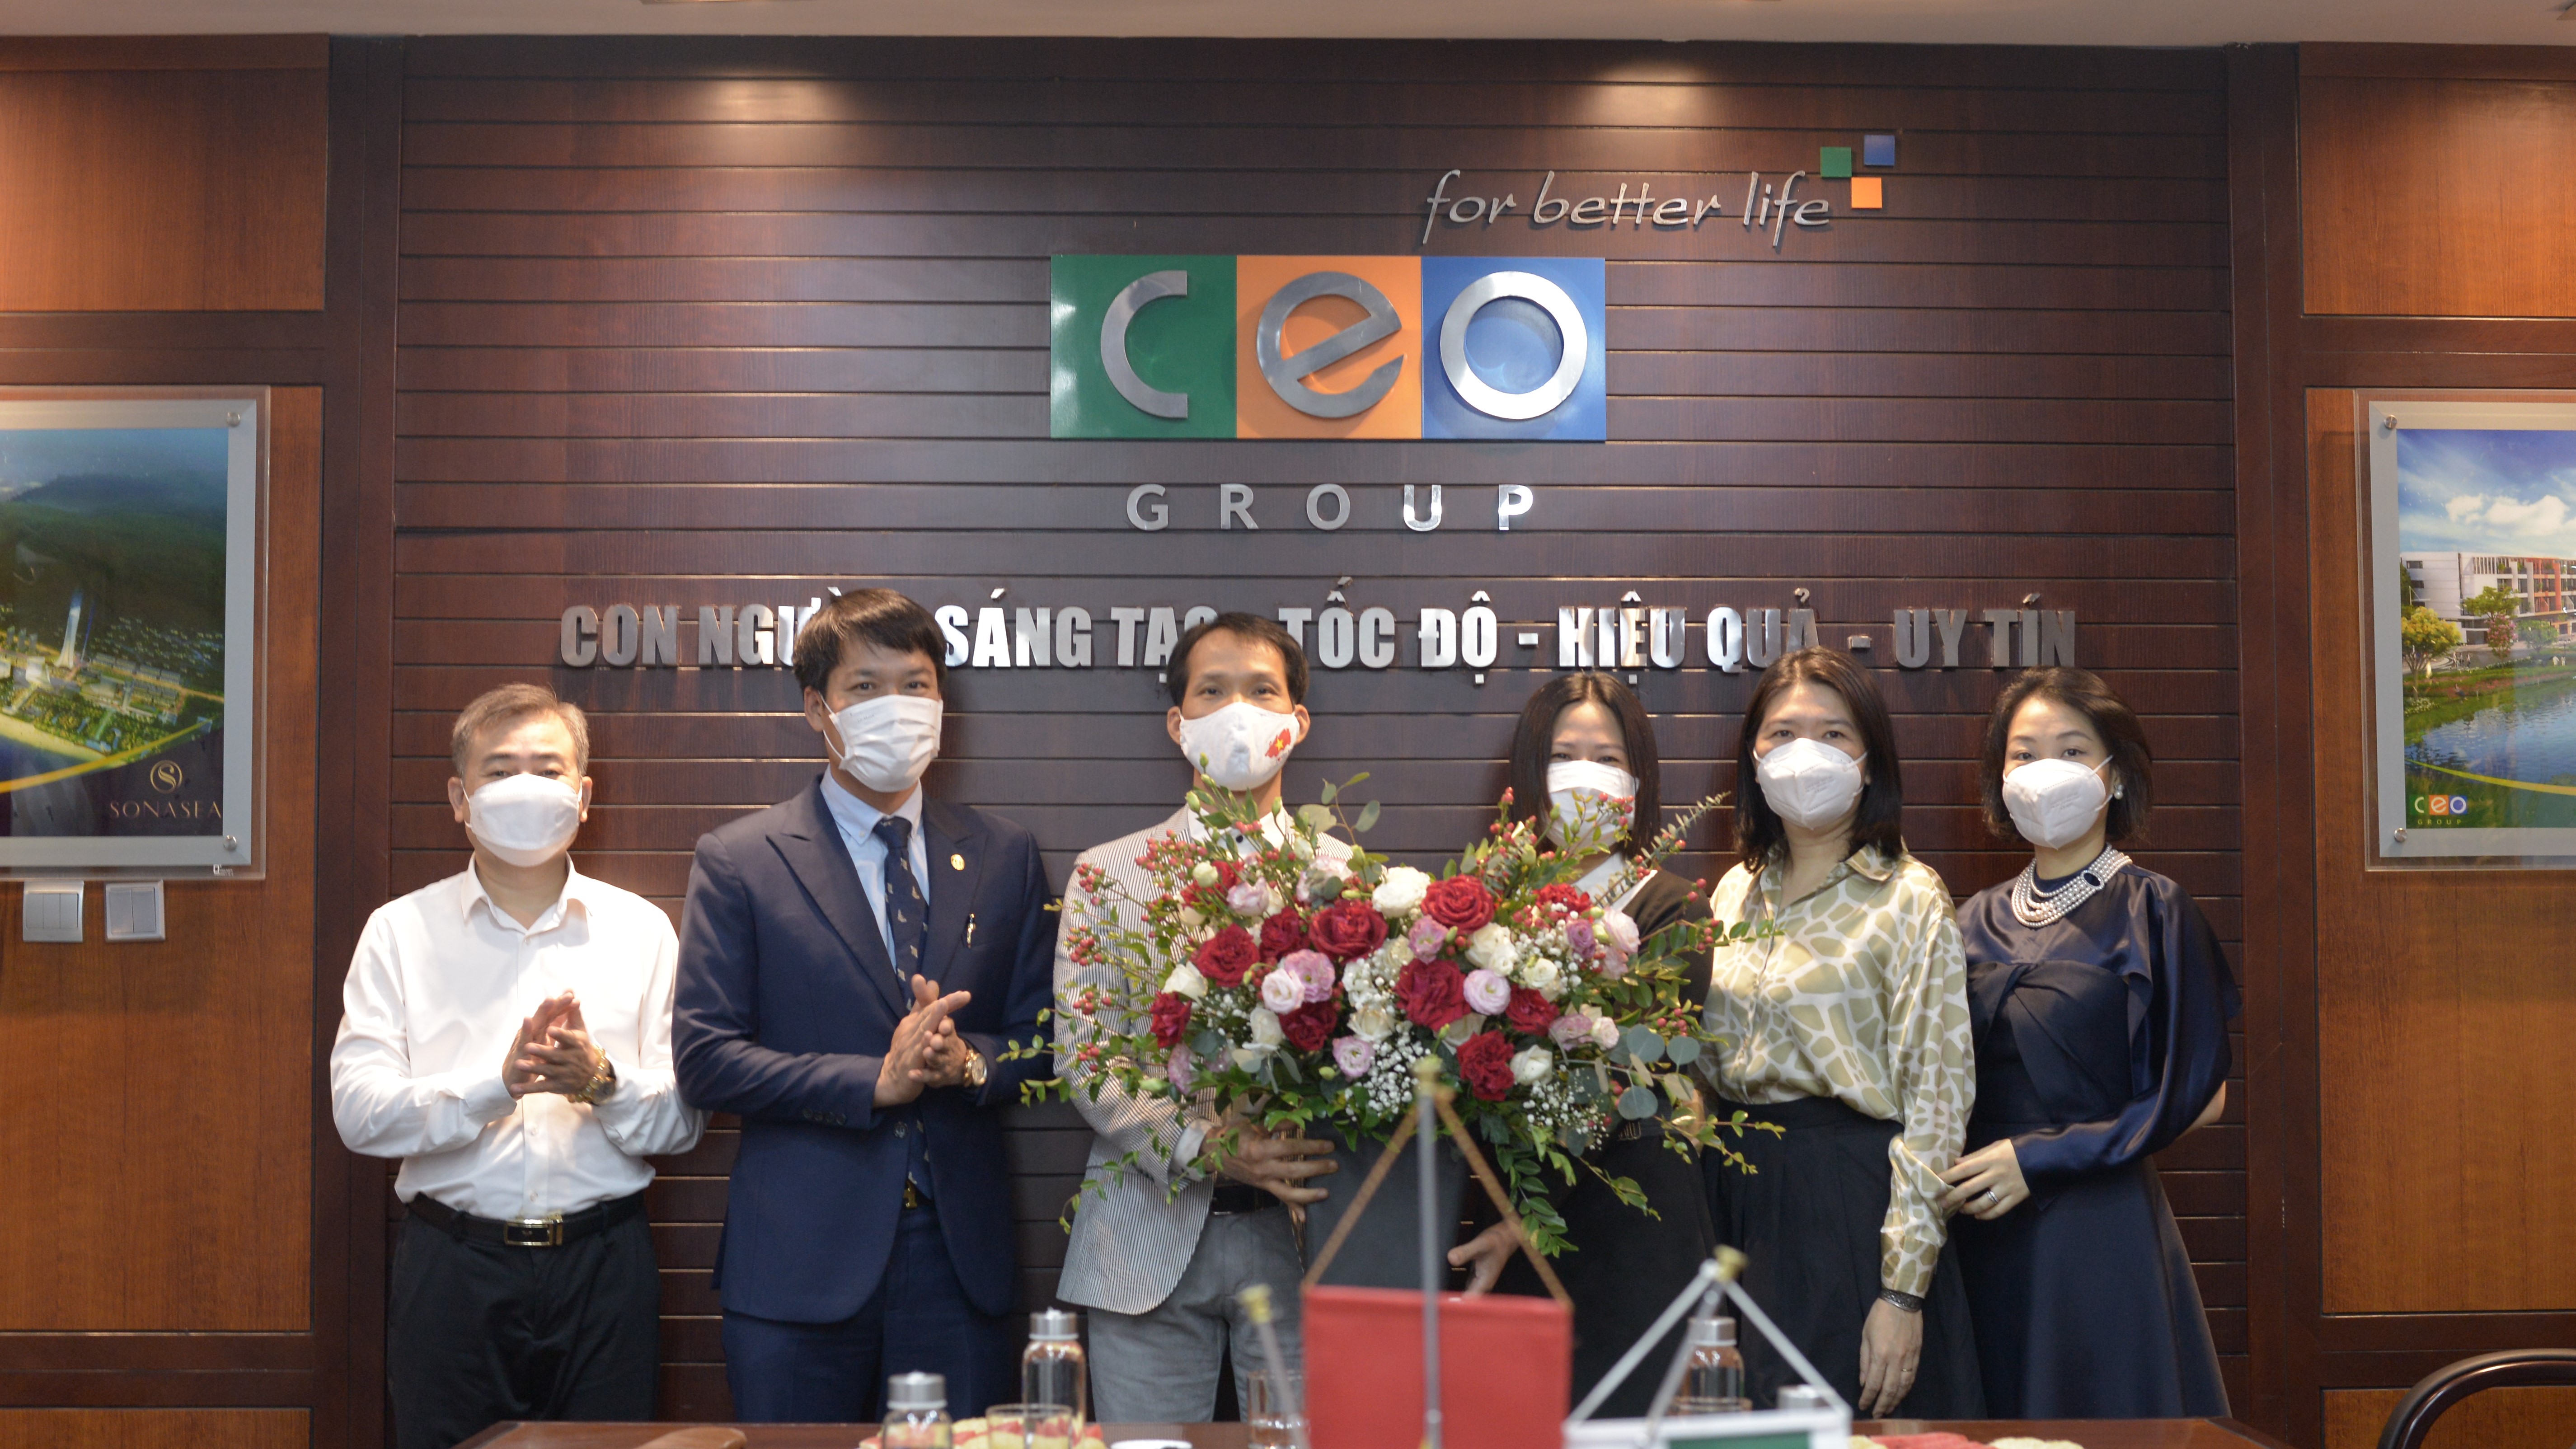 Tập đoàn CEO chúc mừng Ngày Doanh nhân Việt Nam - Tập đoàn CEO